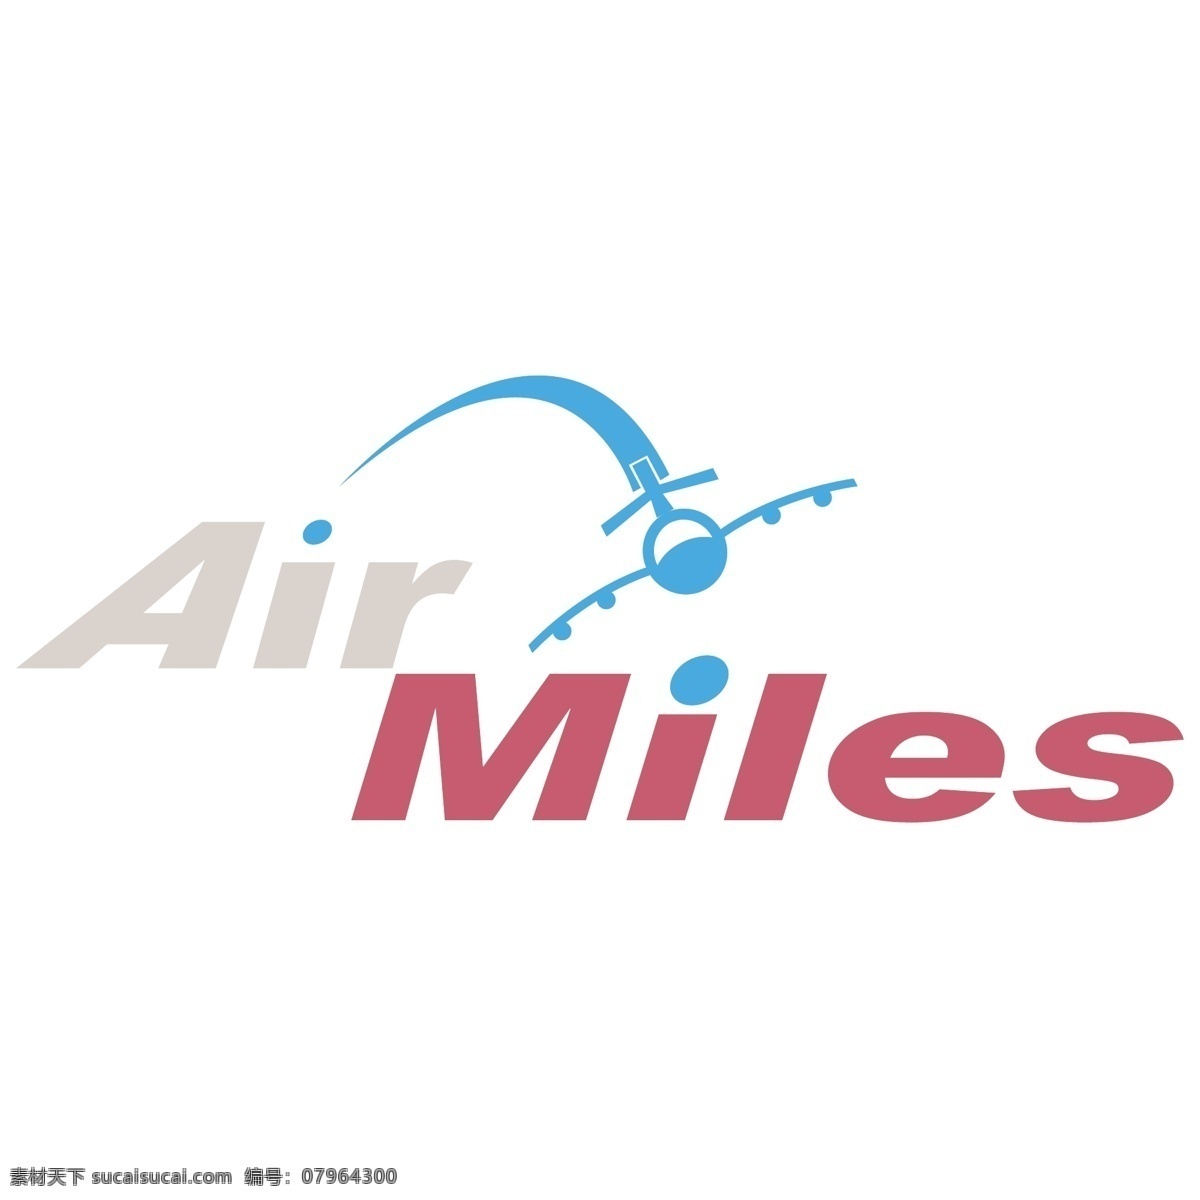 空气 英里 免费 航空 里程 标志 psd源文件 logo设计